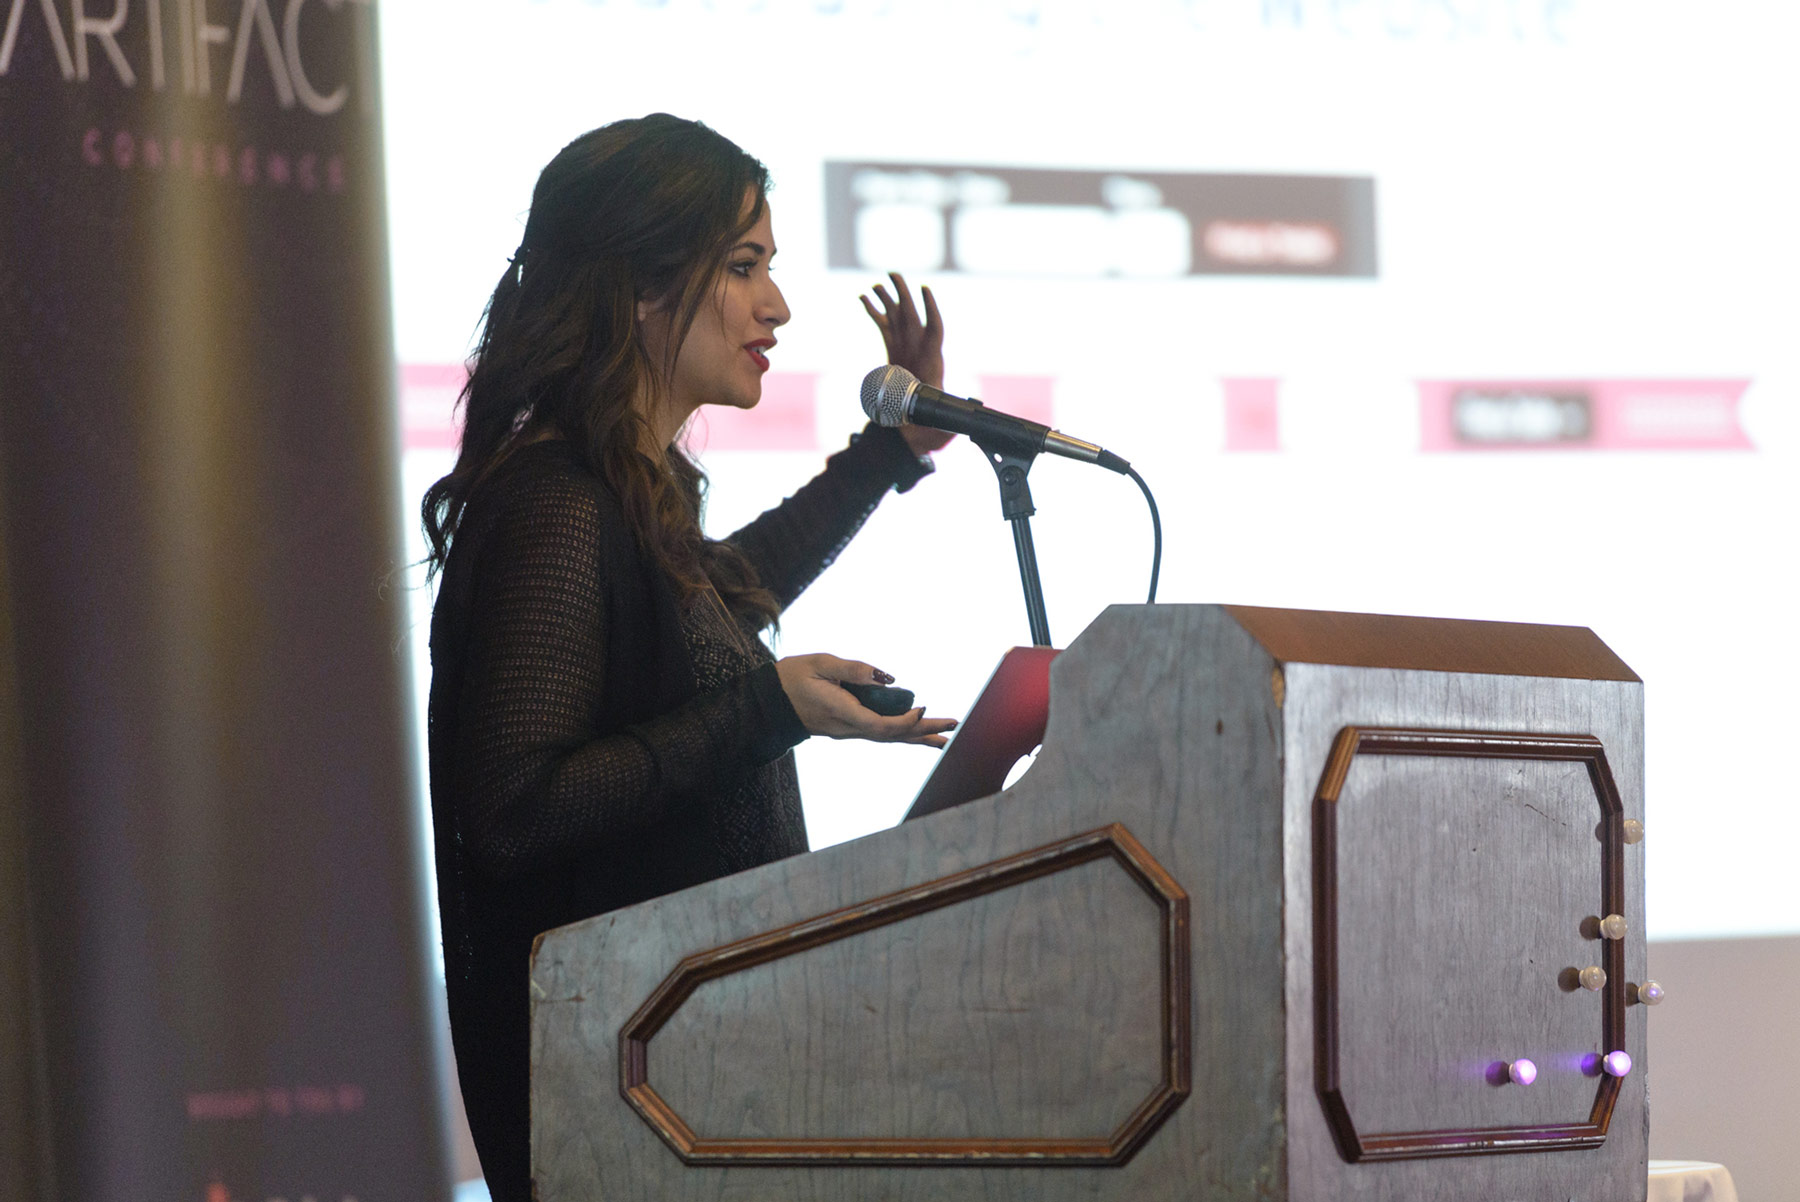 Yesenia speaking at Artifact Conference 2013